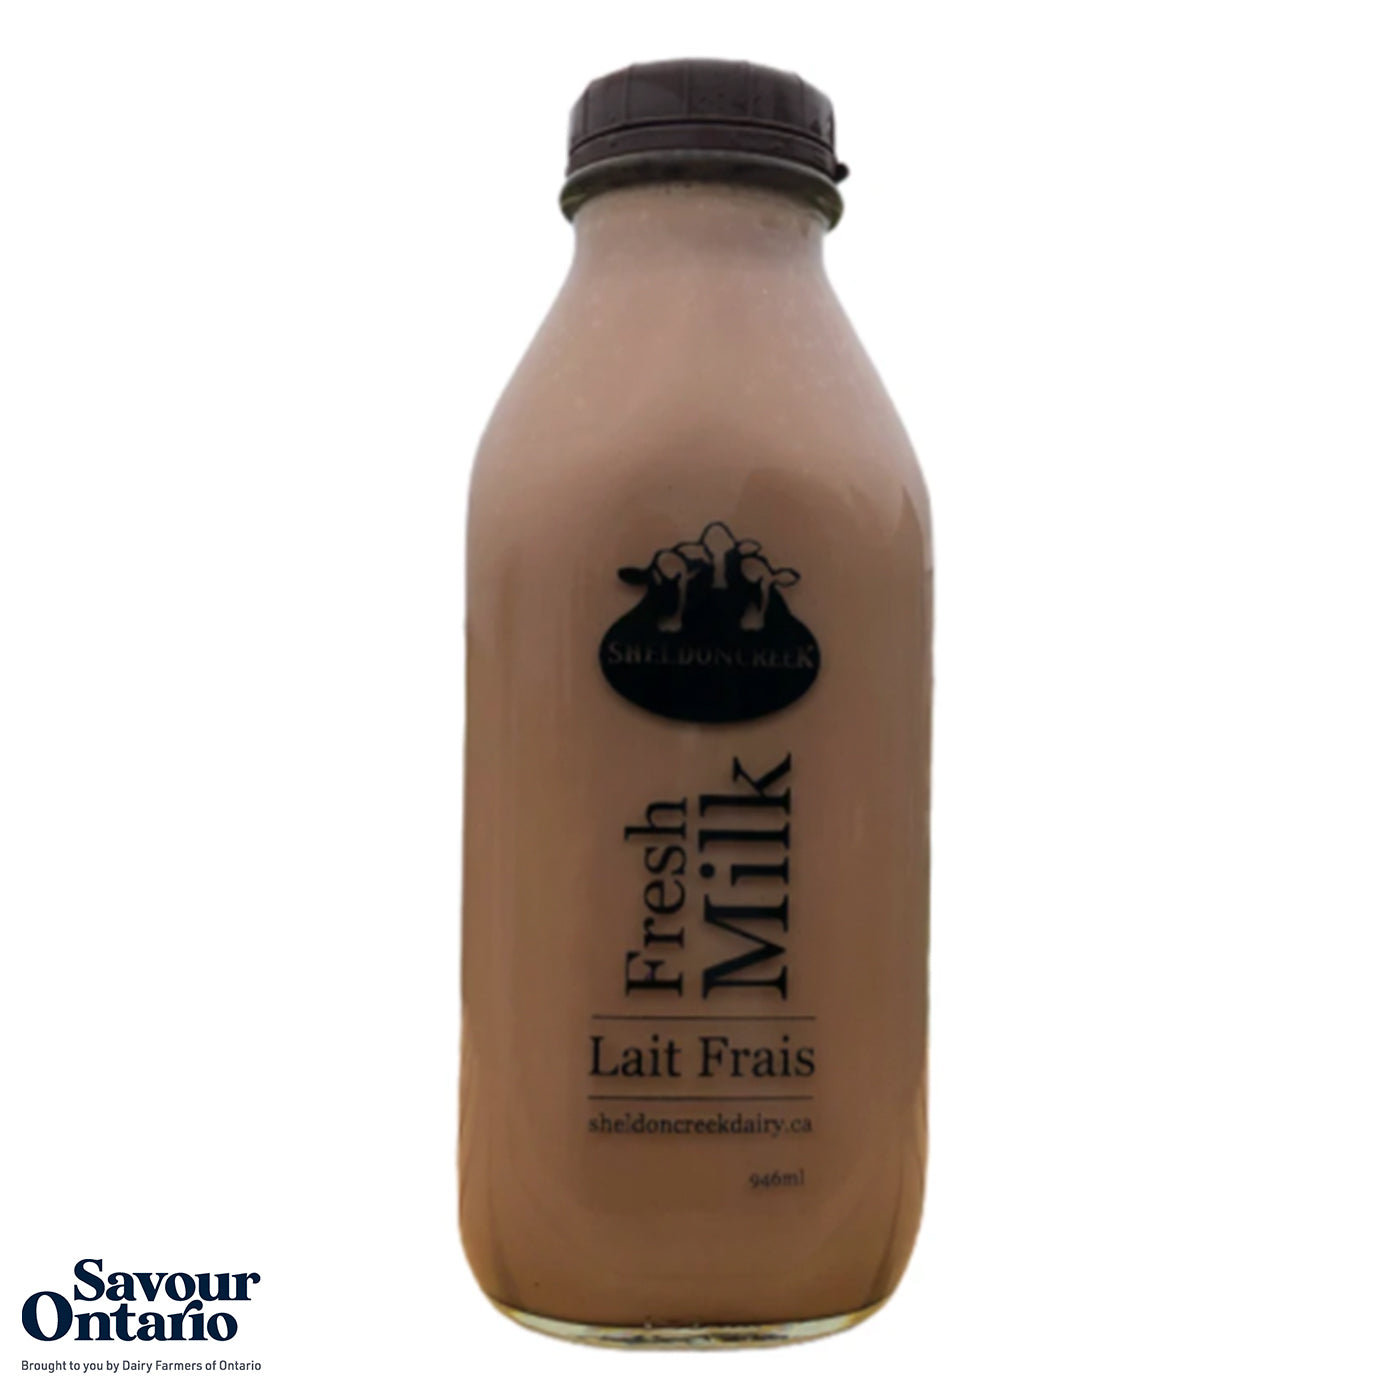 Organic Goat Milk -1L